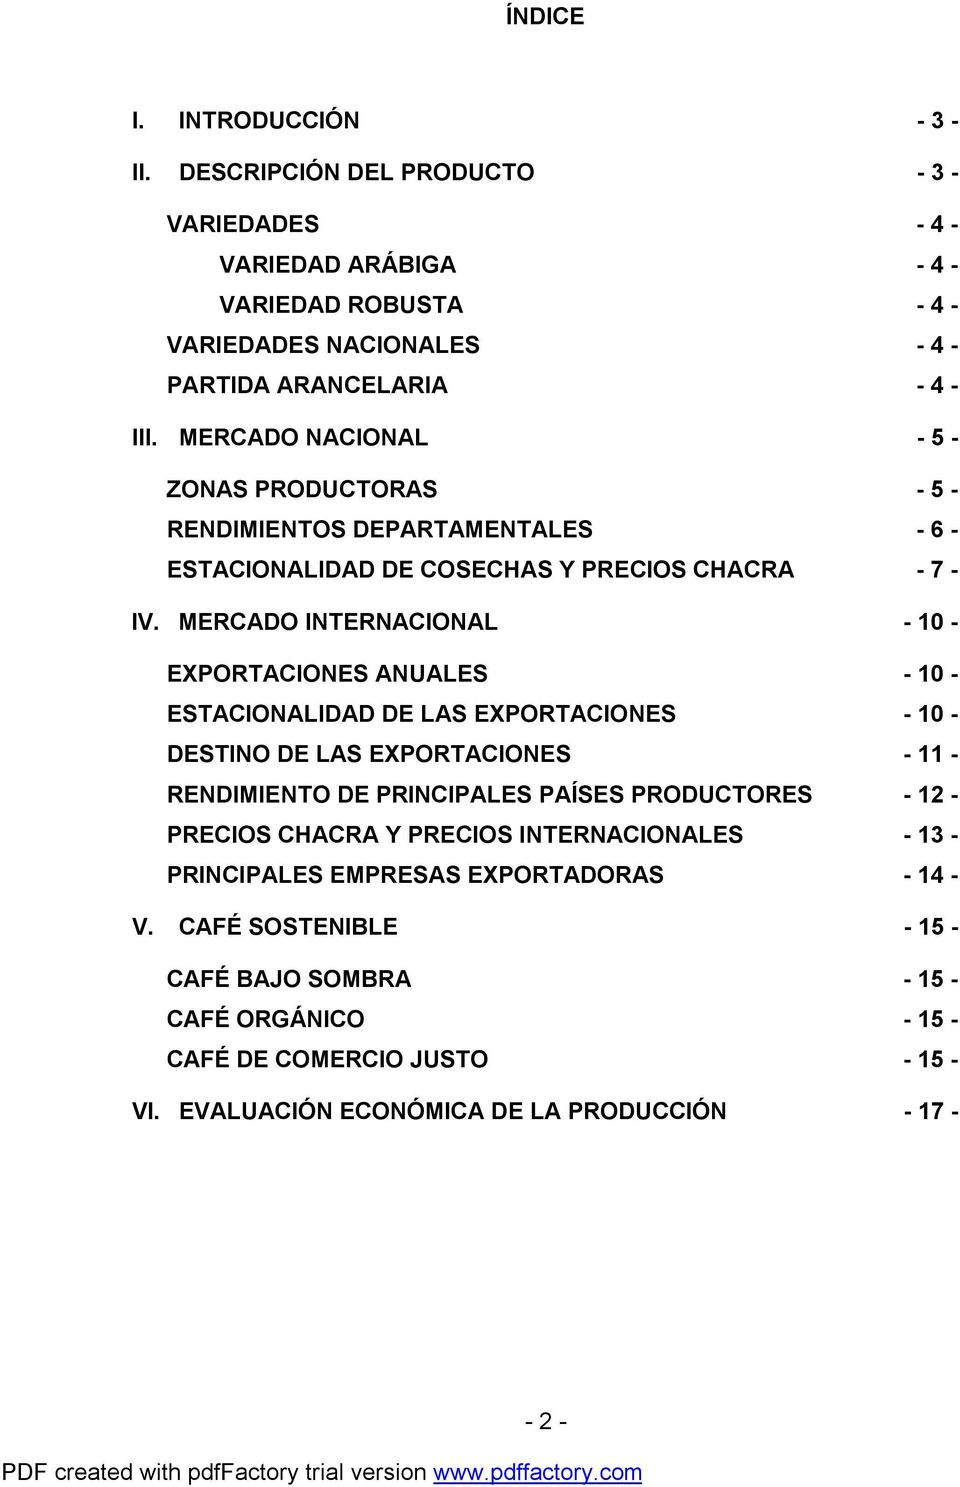 MERCADO INTERNACIONAL - 10 - EXPORTACIONES ANUALES - 10 - ESTACIONALIDAD DE LAS EXPORTACIONES - 10 - DESTINO DE LAS EXPORTACIONES - 11 - RENDIMIENTO DE PRINCIPALES PAÍSES PRODUCTORES - 12